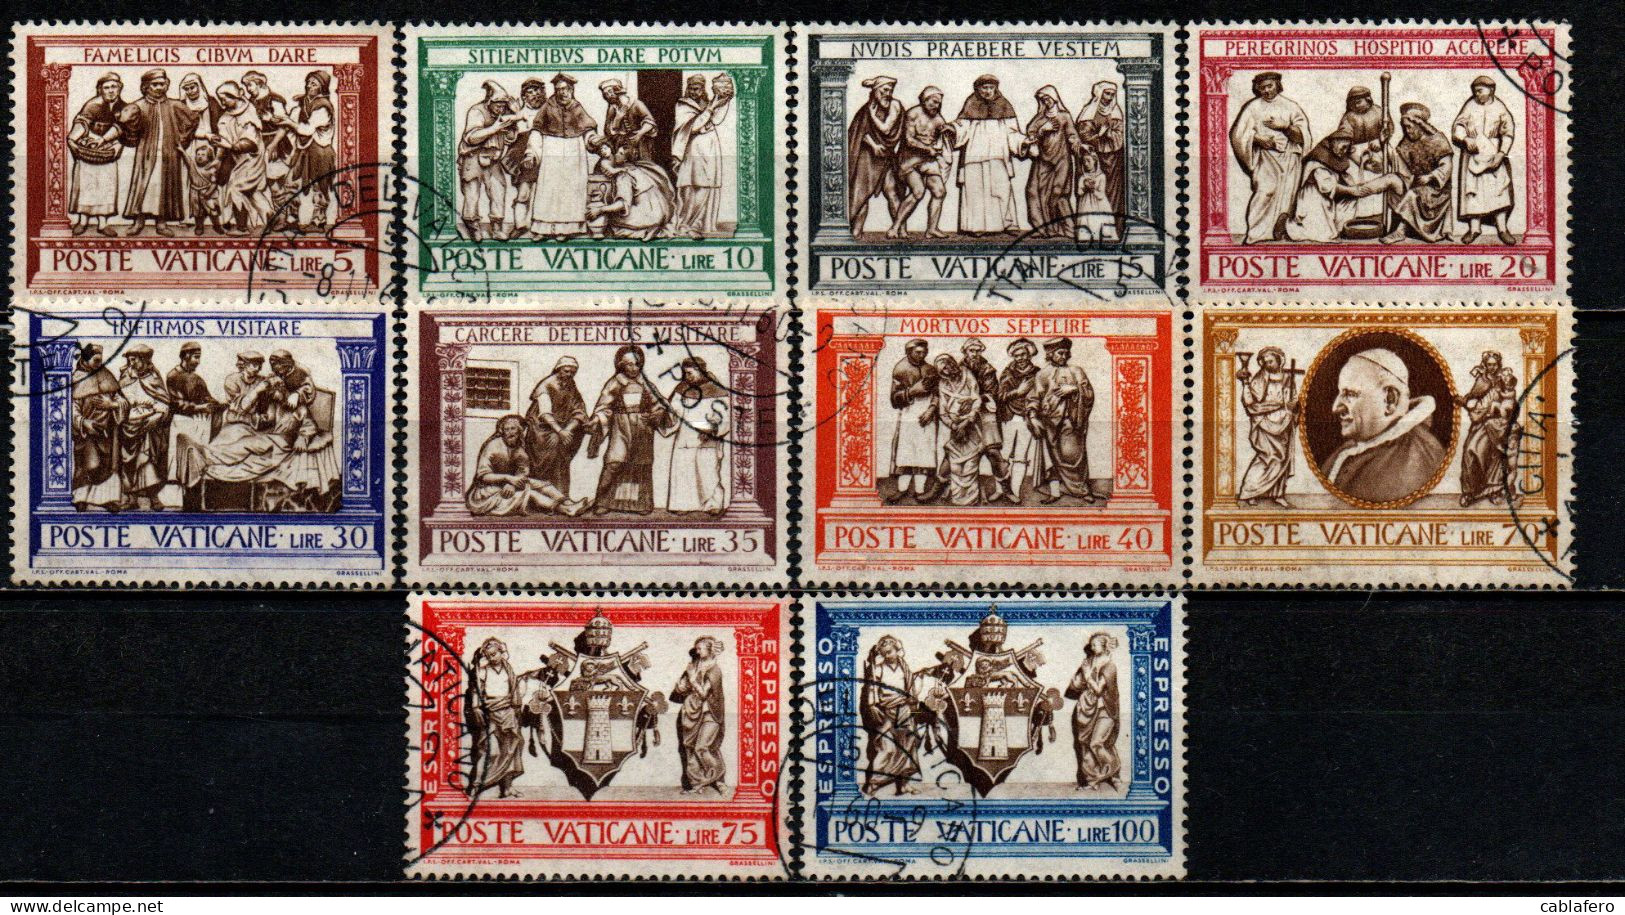 VATICANO - 1960 - SERIE MISERICORDIA - CON ESPRESSI - USATI - Used Stamps